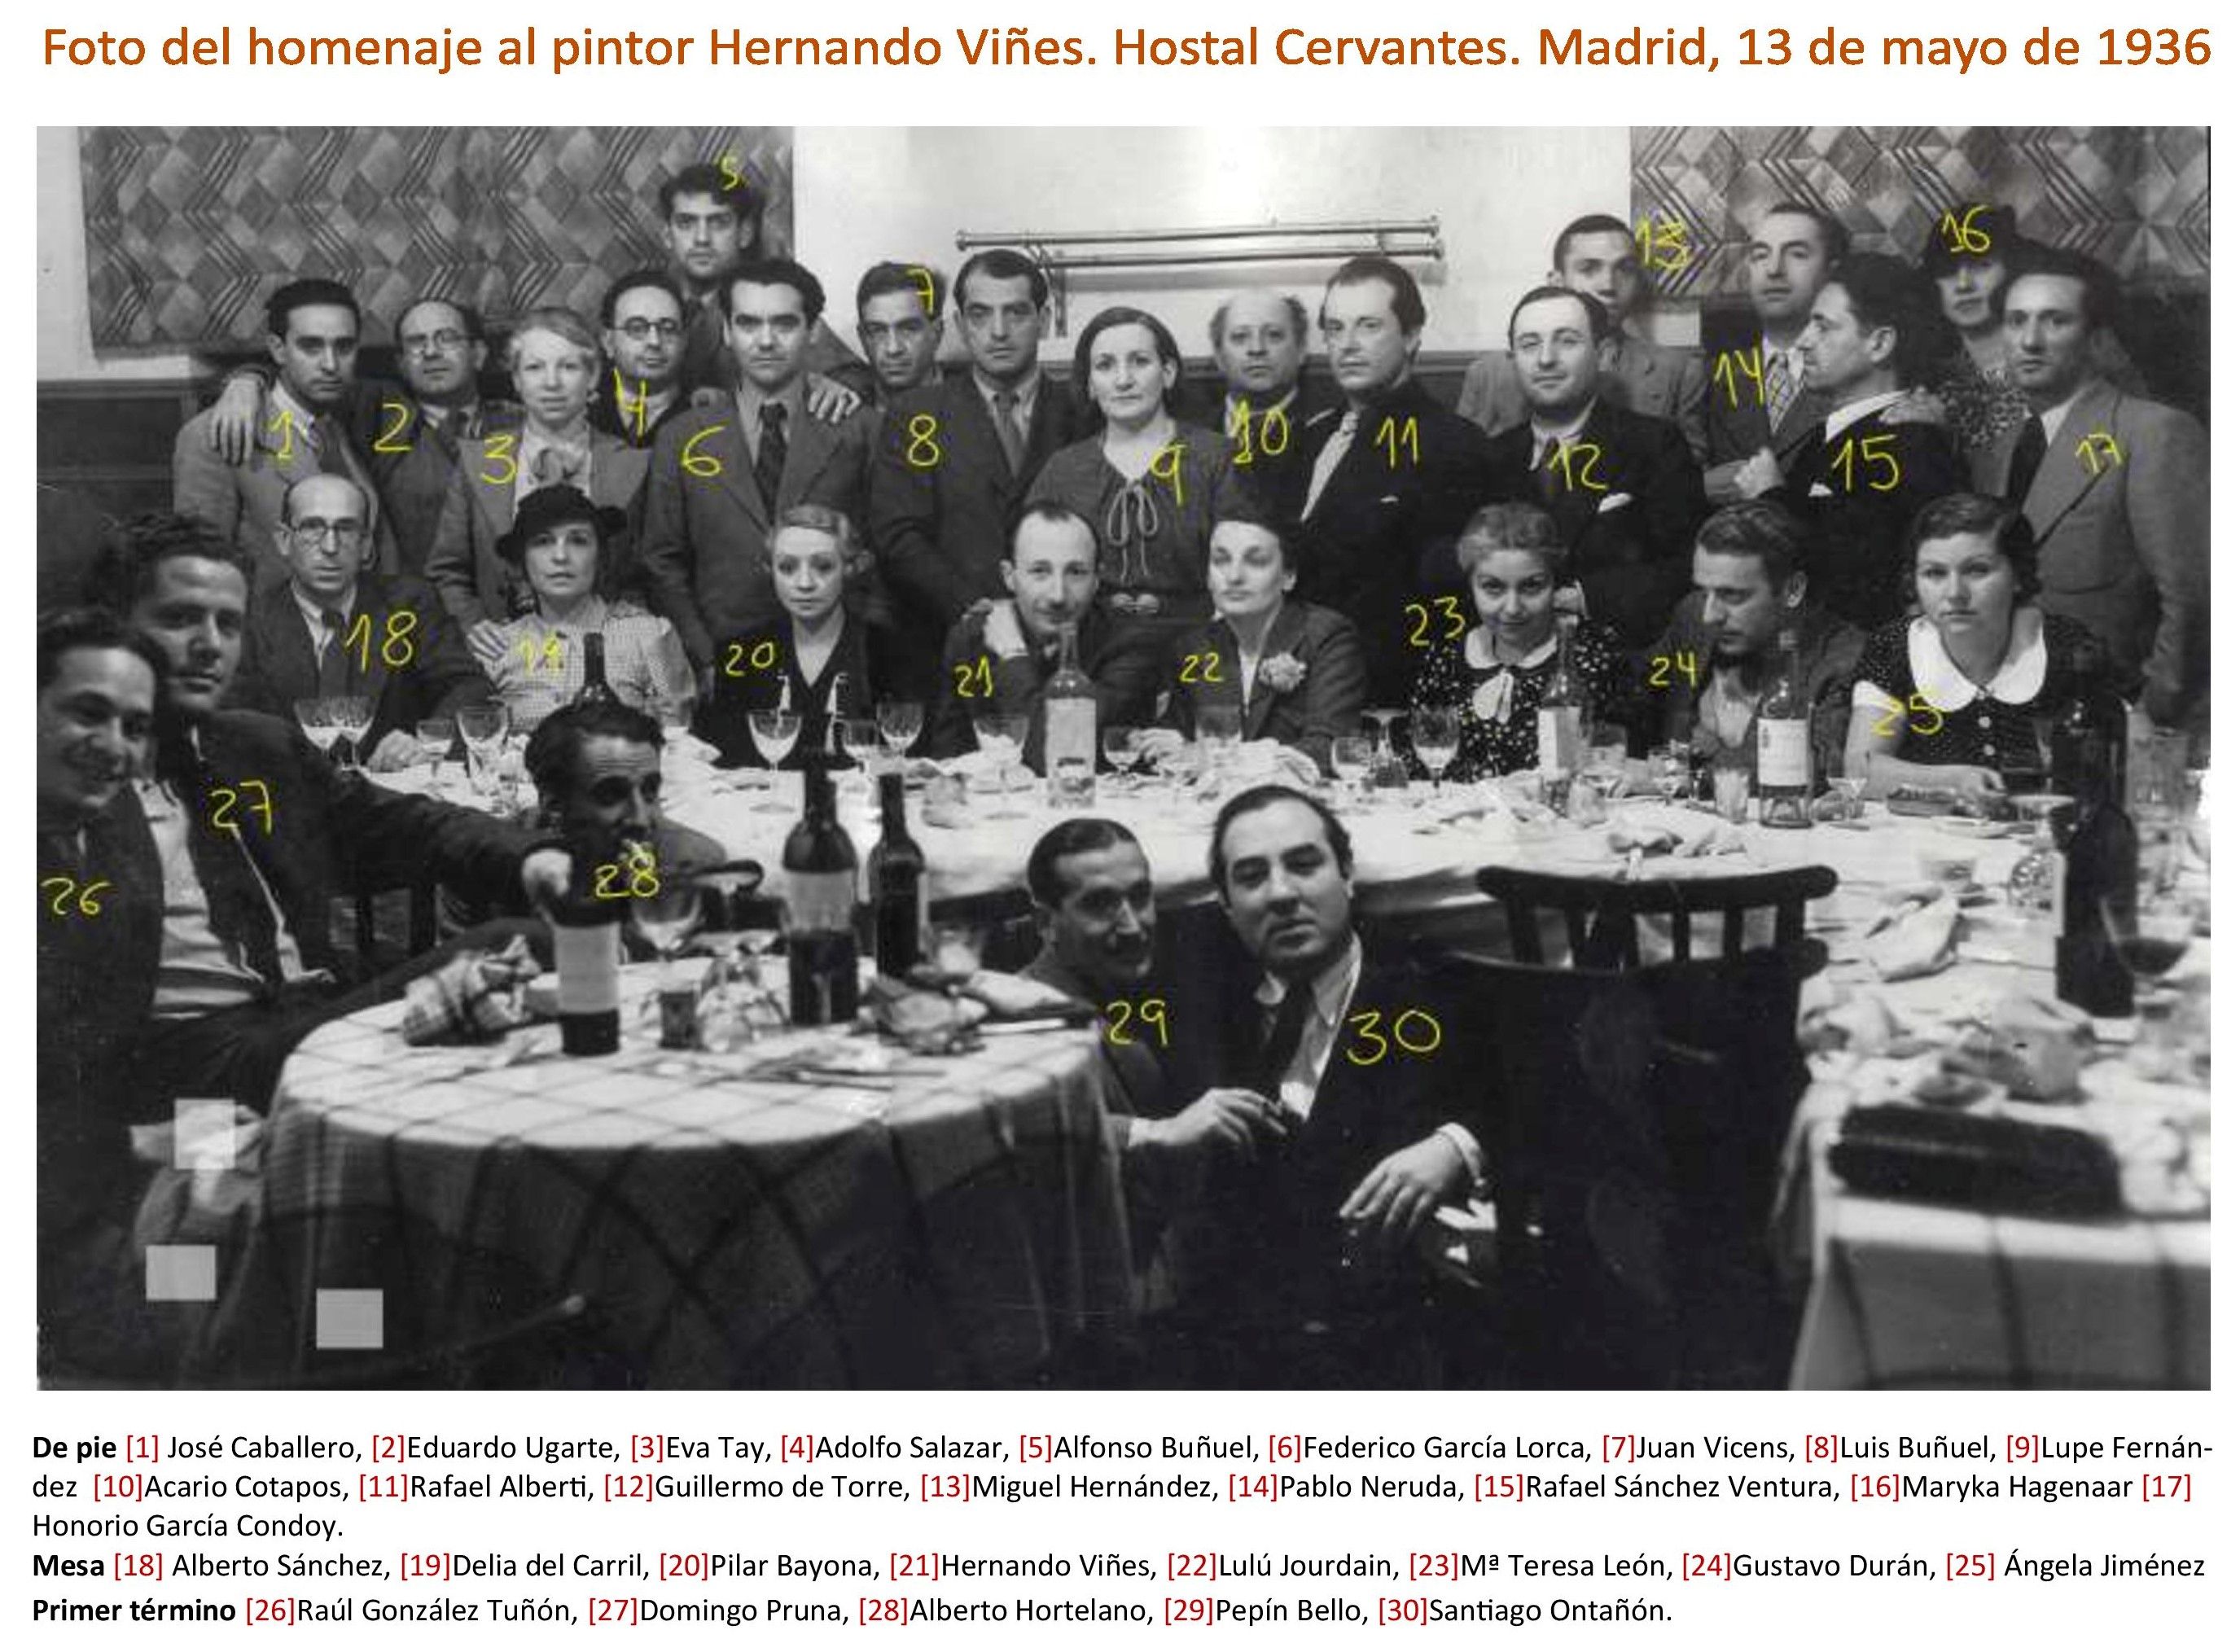 Pilar Bayona (20) y otros miembros de la Generación del 27 en el homenaje al pintor Hernando Viñes en mayo de 1936. | L.N.C.